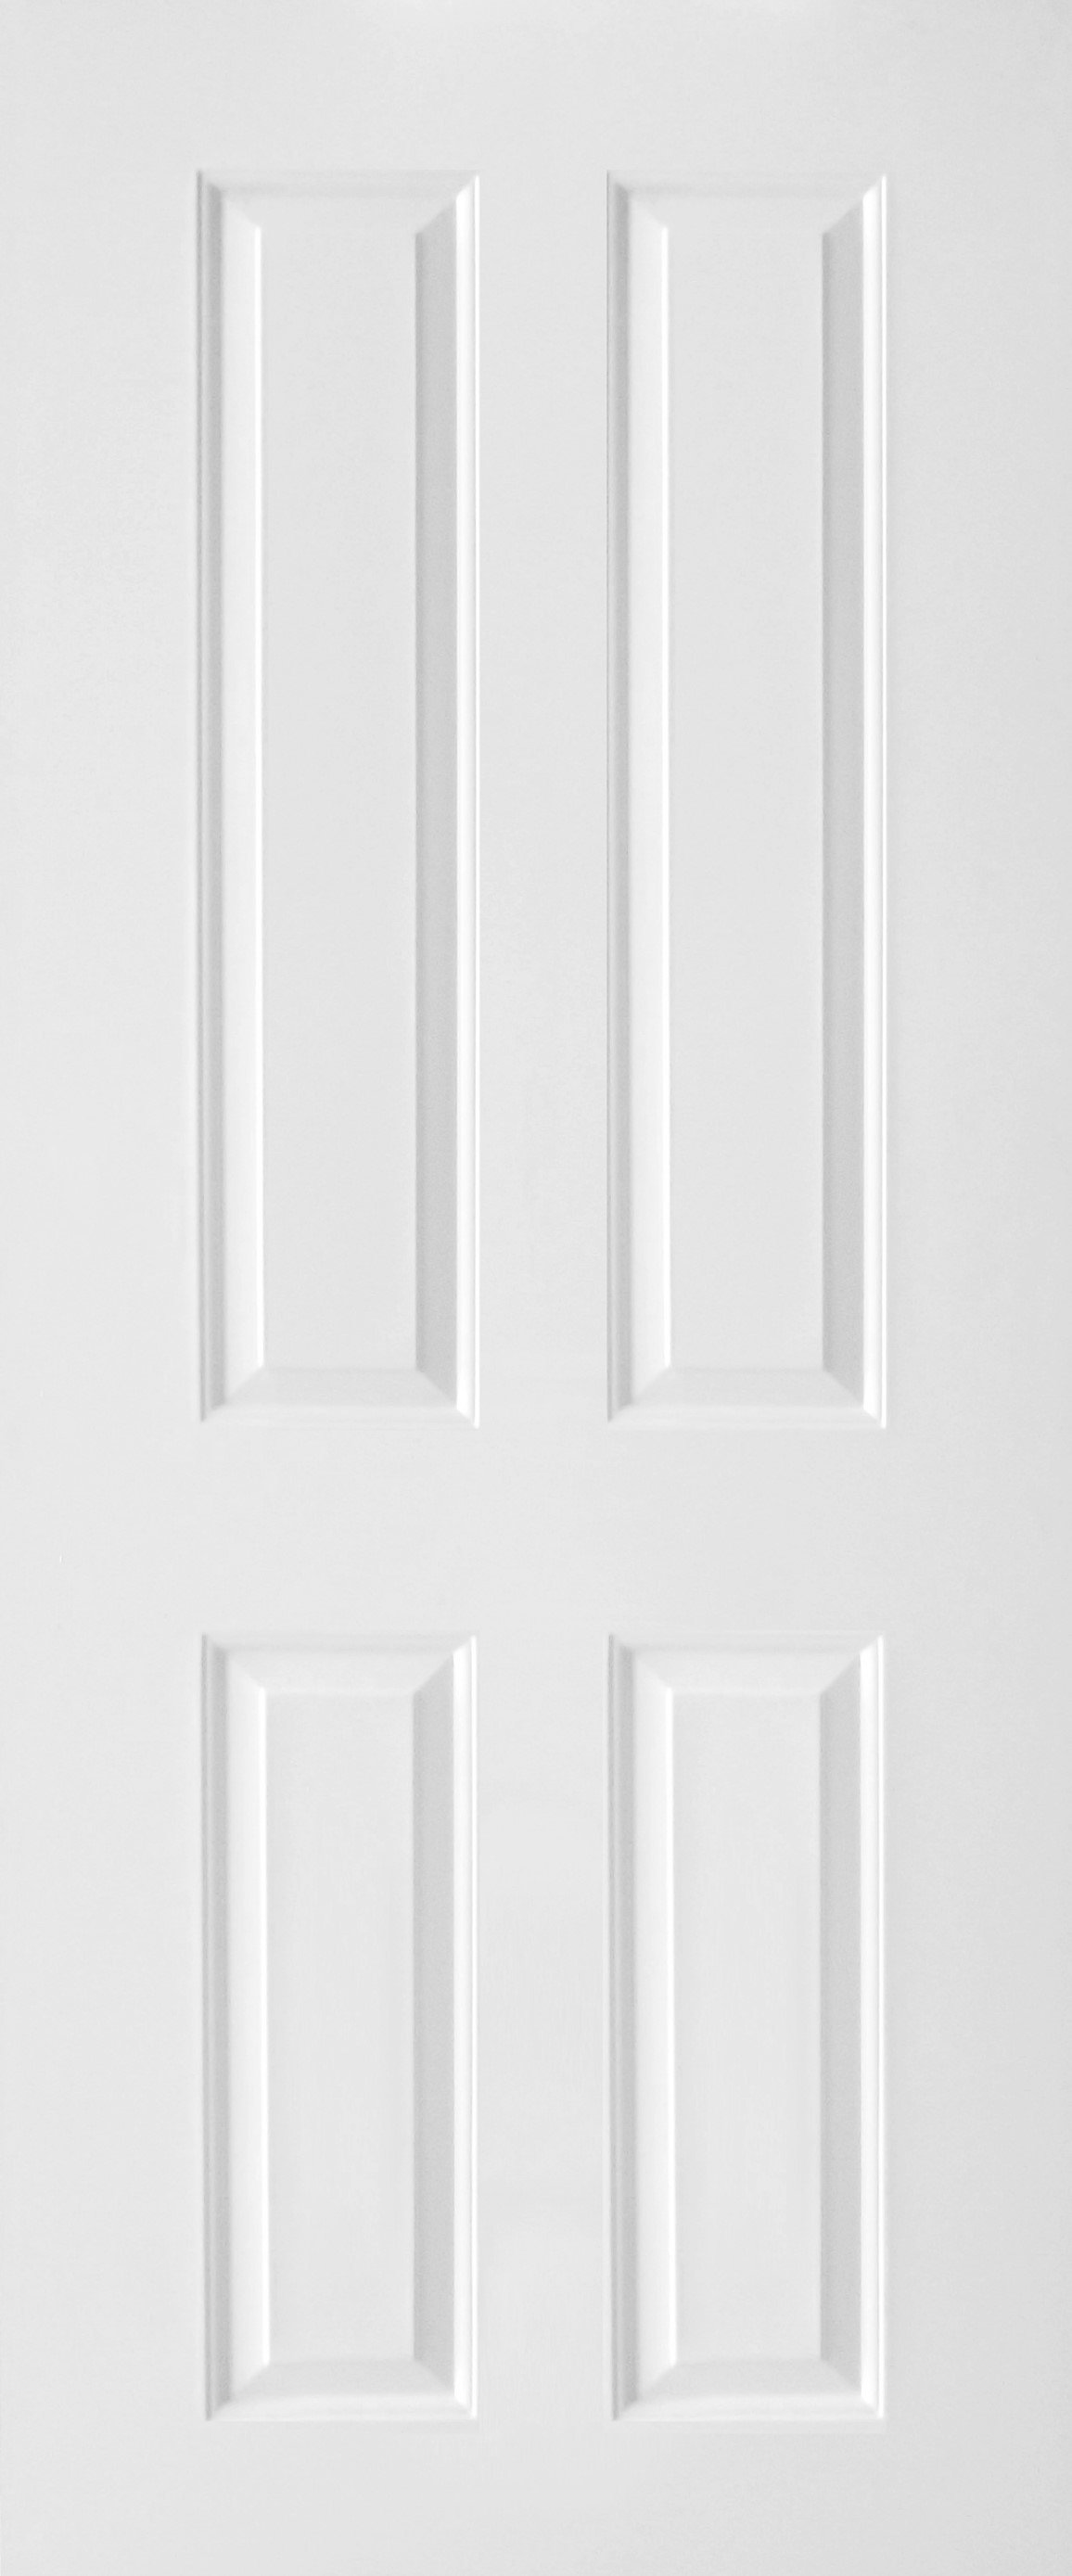 ประตู uPVC รุ่นภายนอก EXTERA สีขาว ลายไม้ บานลูกฟัก 4 ช่องตรง